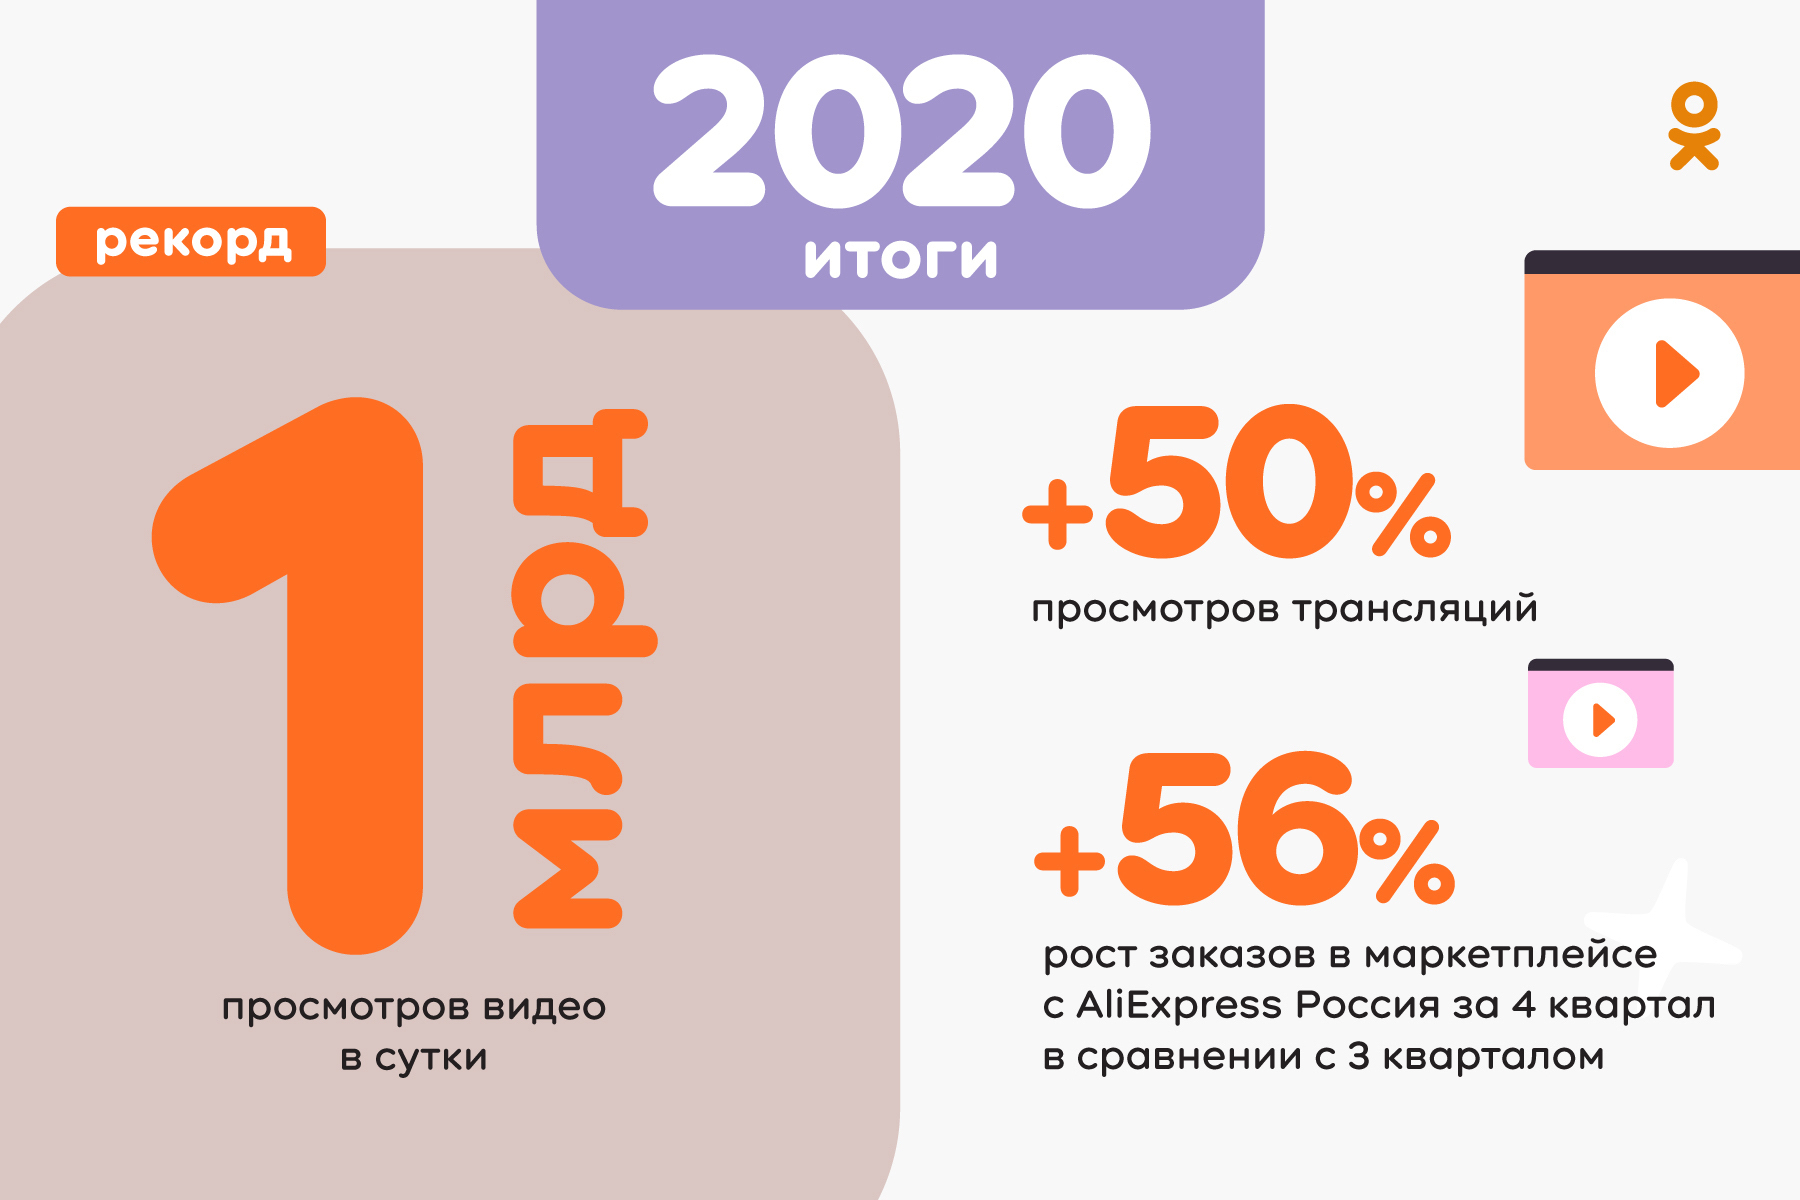 Почти 1 млрд руб за мобильные игры: итоги 2020 года Одноклассников